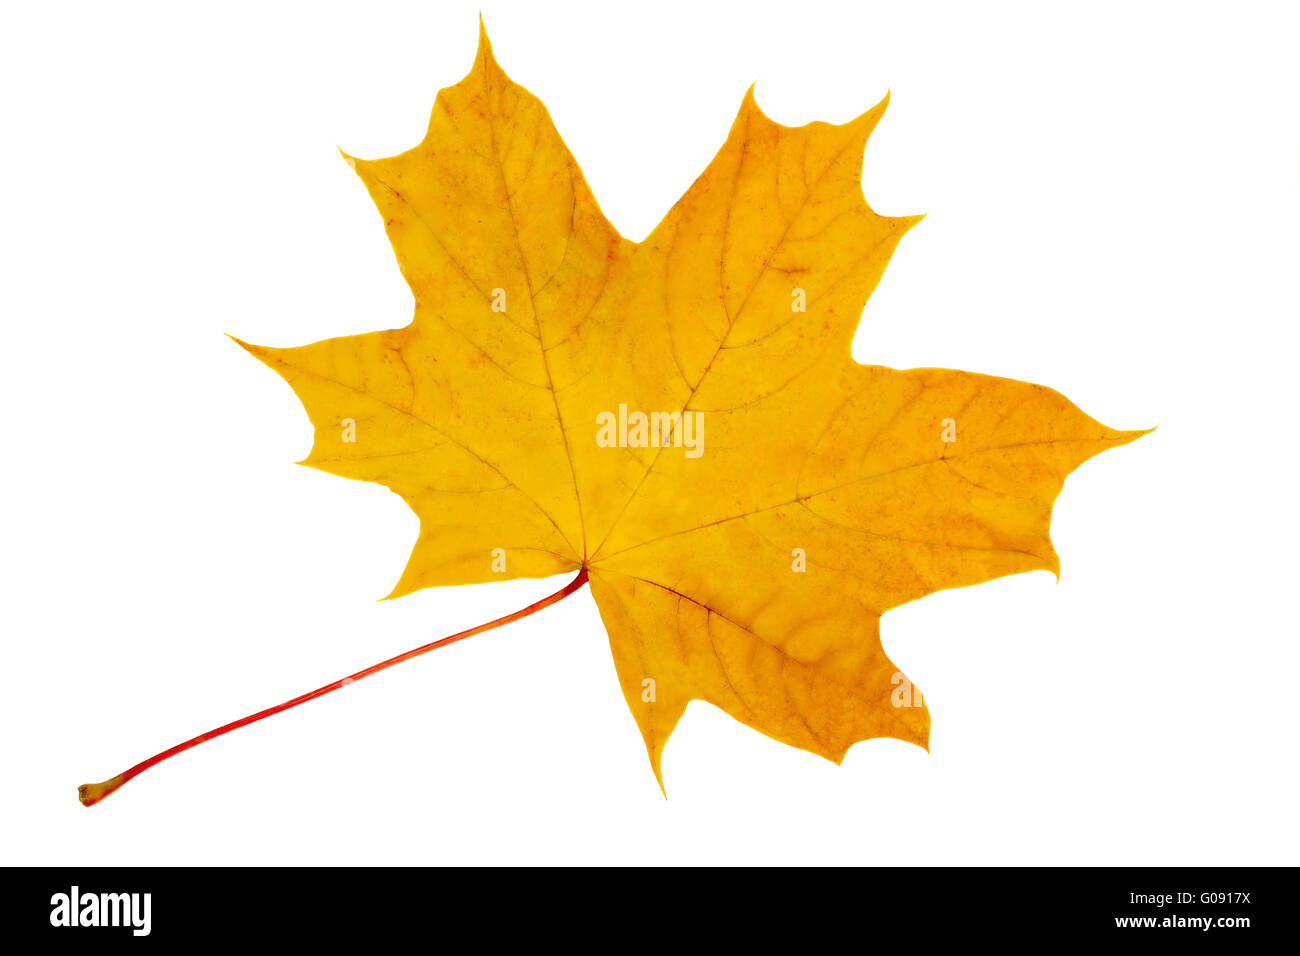 Autumn, yellow maple leaf on a white background. Stock Photo